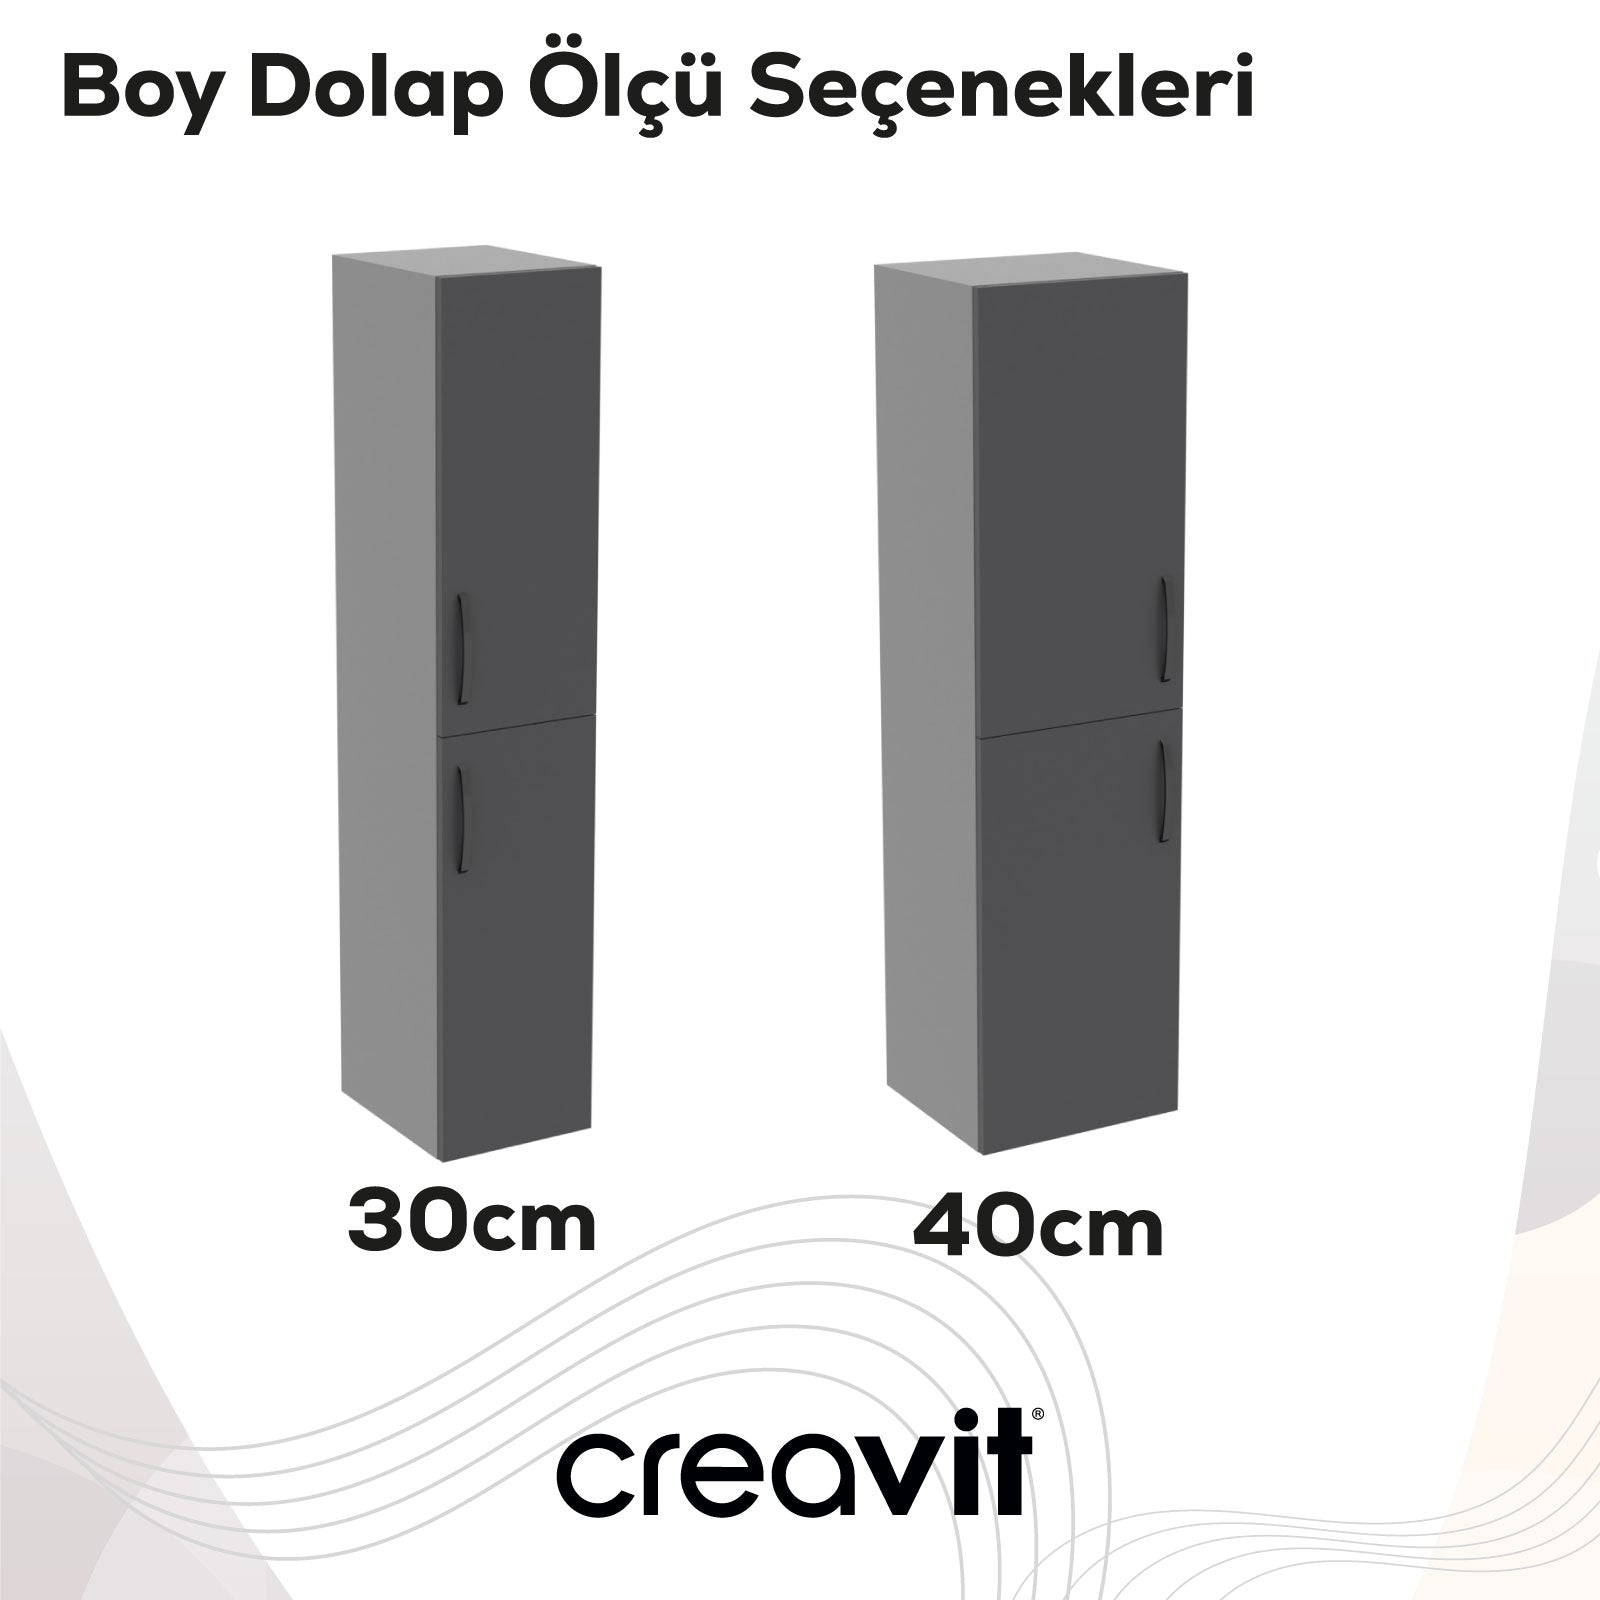 D10 40 cm Sol Boy Dolabı Gri Melamin Gövde Lake Kapak - Creavit | Banyo Bu Tarafta